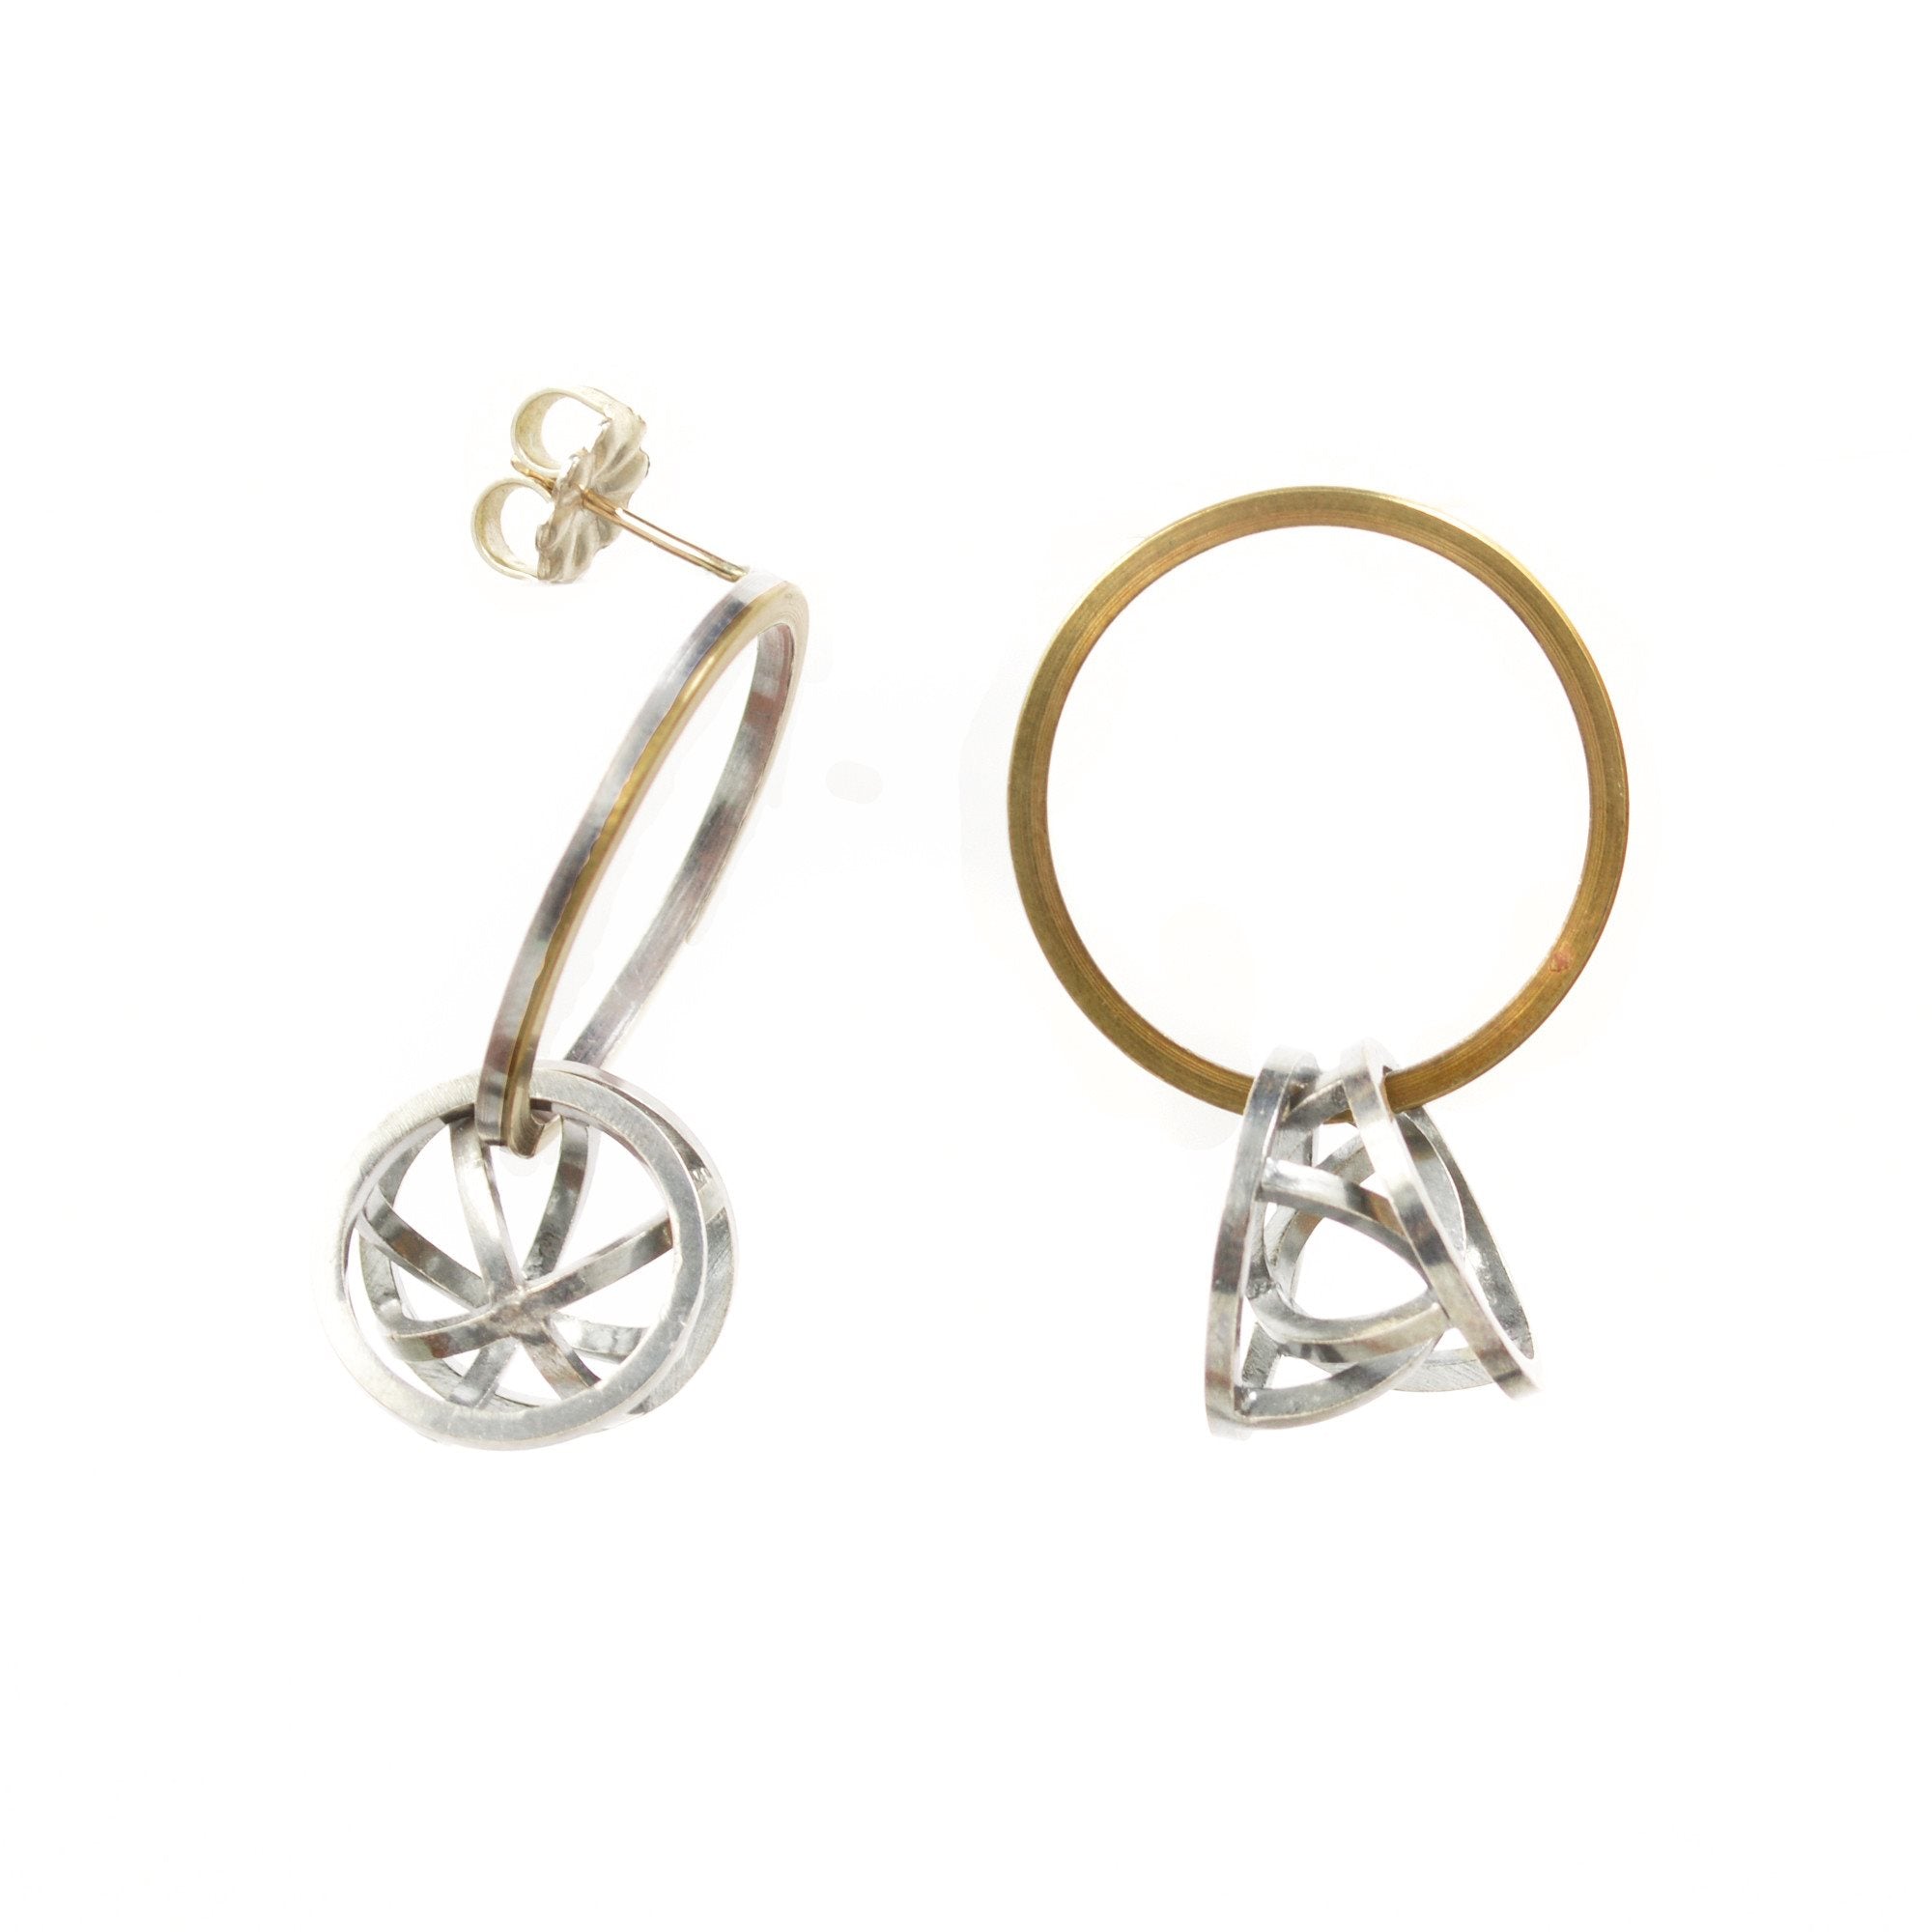 Orbit Hoop Earrings in Sterling Silver, 22k Gold